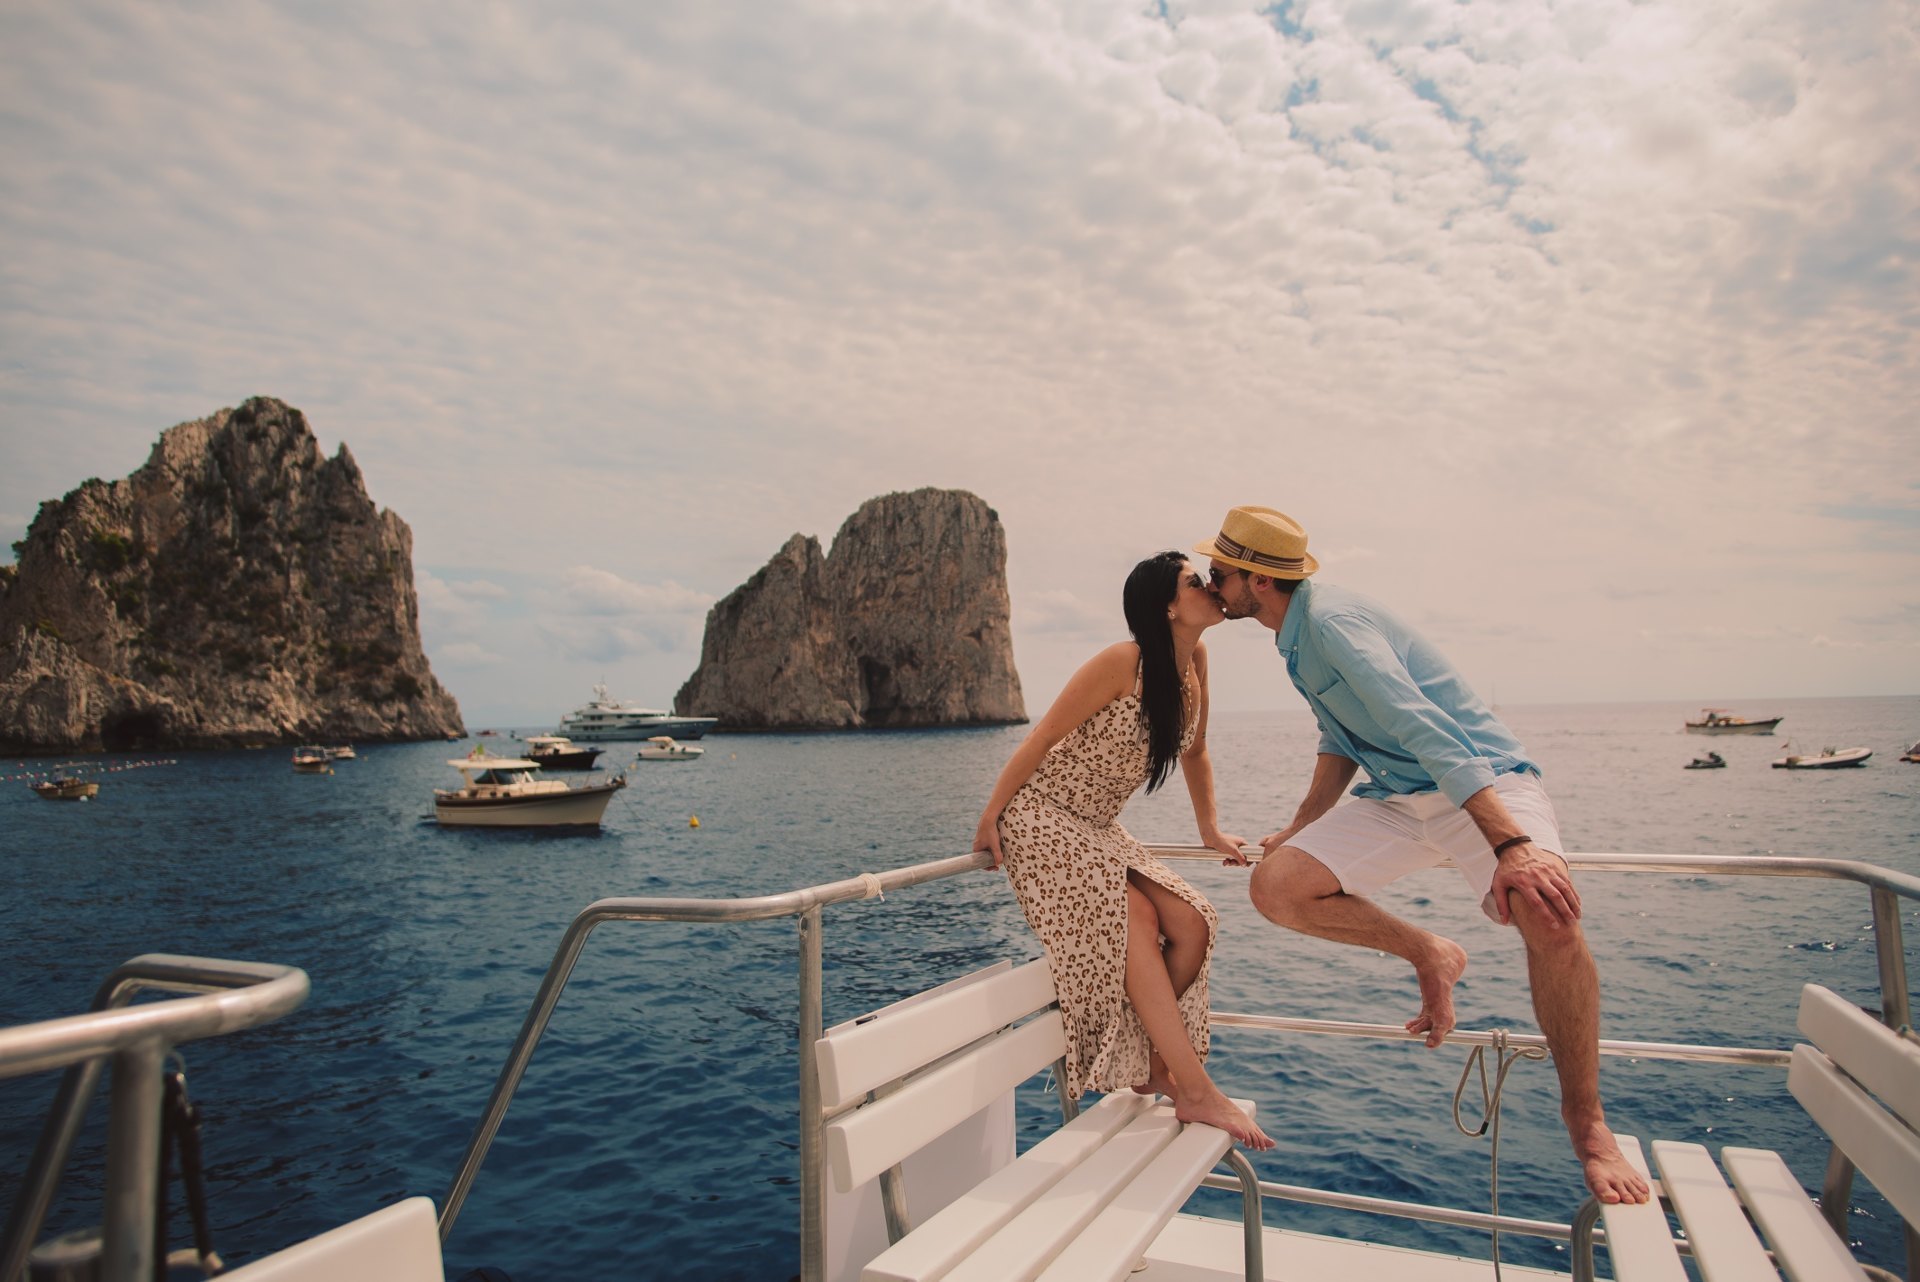 Vamos ali na Ilha de Capri fazer umas fotos e já voltamos! | Costa Amalfitana | Itália